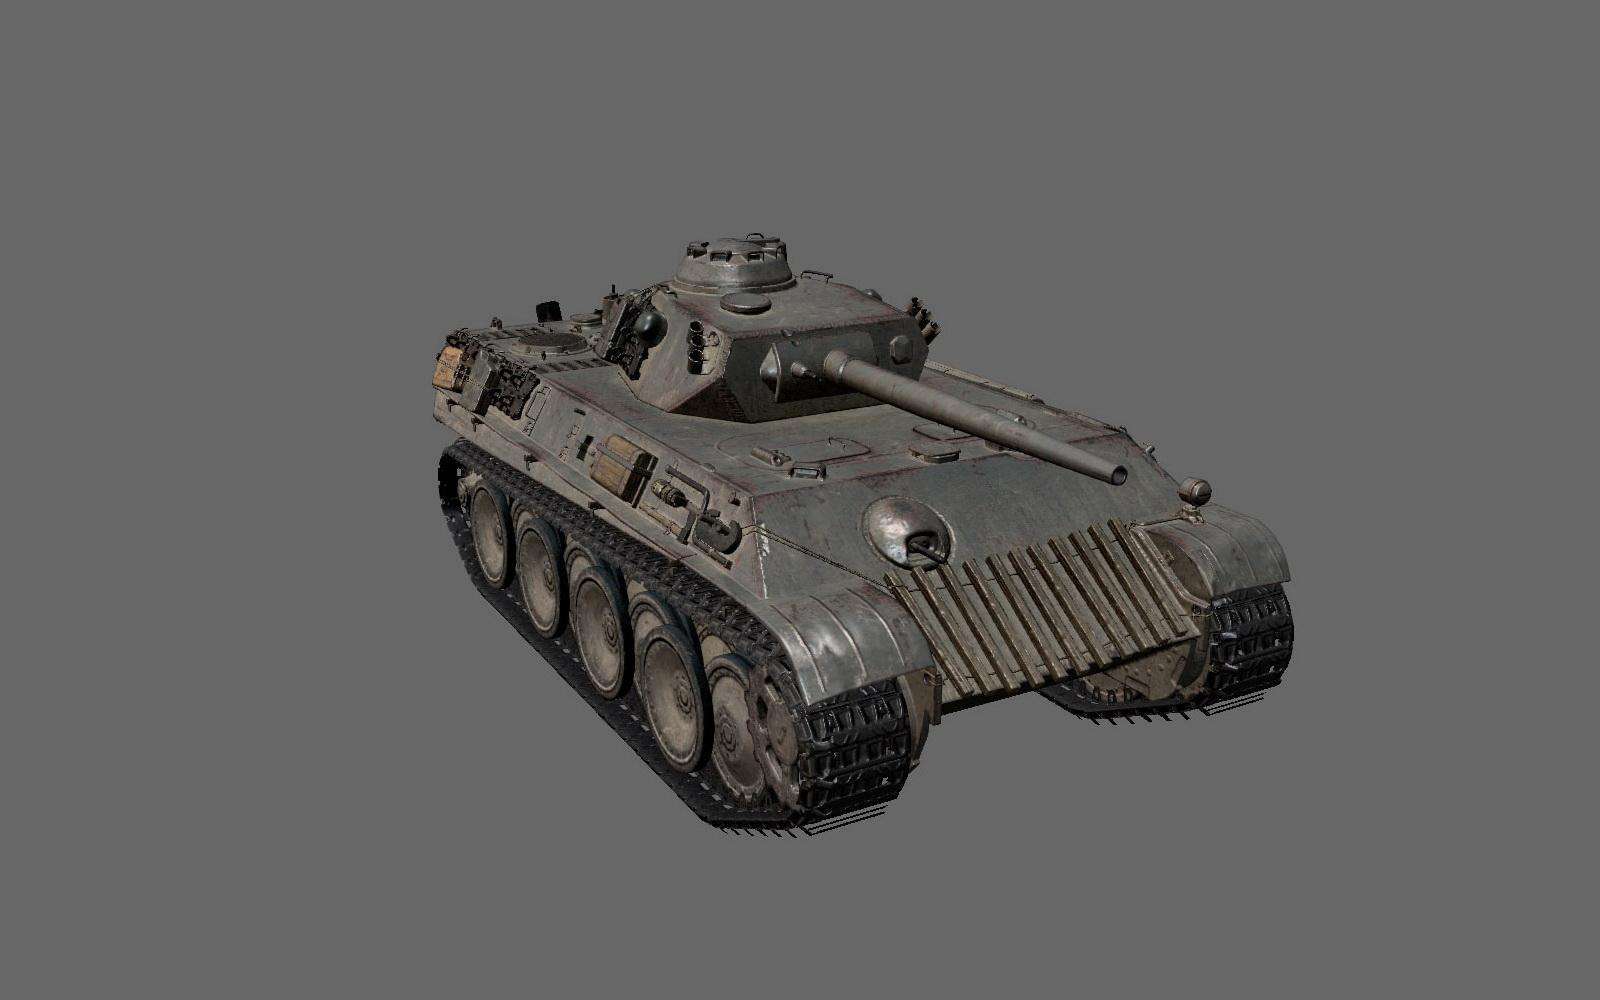 Wot 8 уровень. Танк Aufklarungspanzer Panther. Немецкий легкий танк 8 уровня в World of Tanks. ЛТ 8 уровня в World of Tanks. Немецкий премиумный танк 8 уровня.